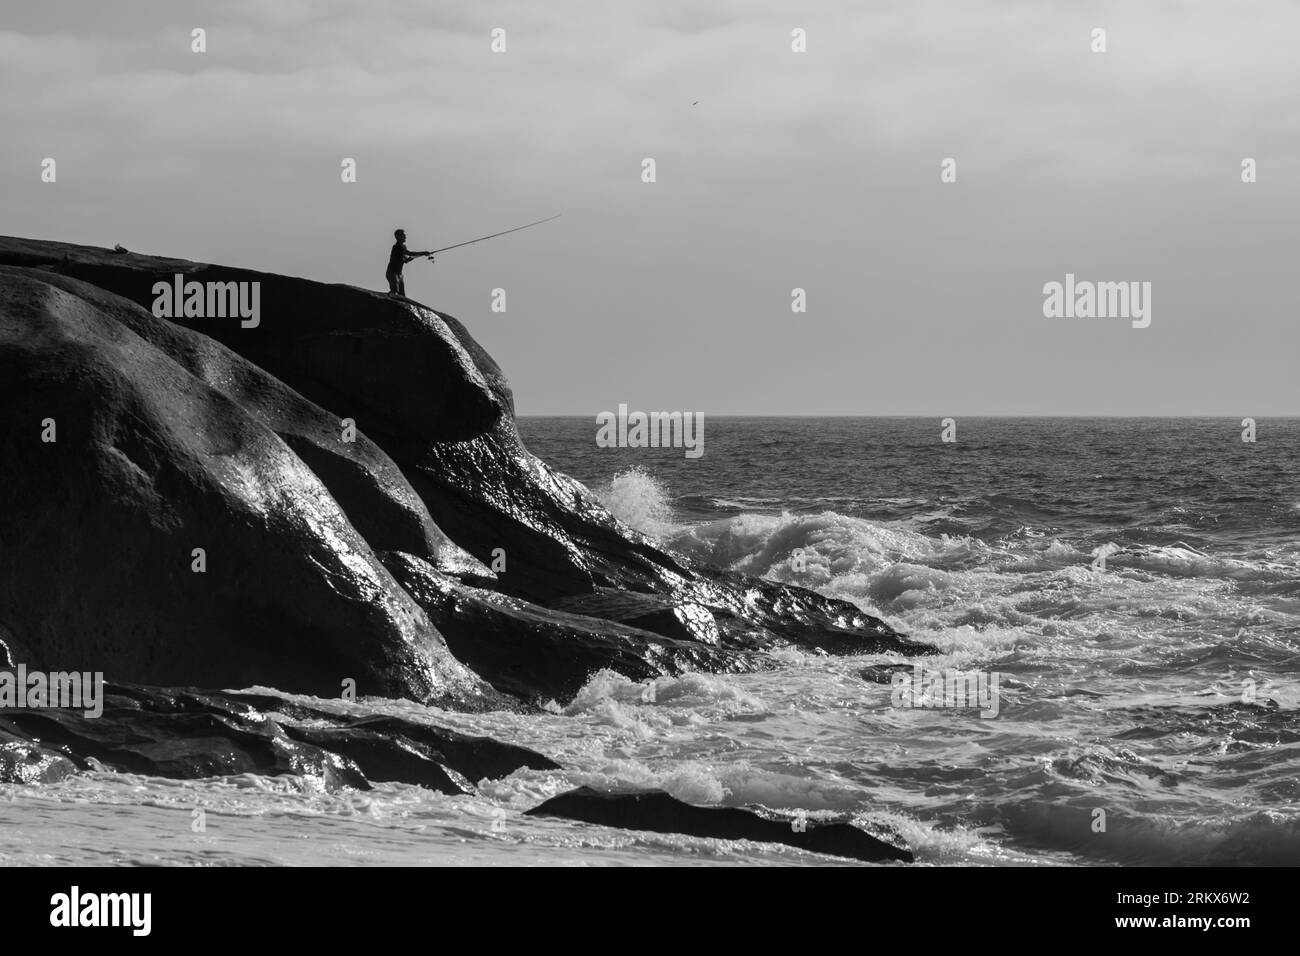 Bianco e nero di una persona in piedi su una costa rocciosa, che pesca nelle acque calme. Foto Stock